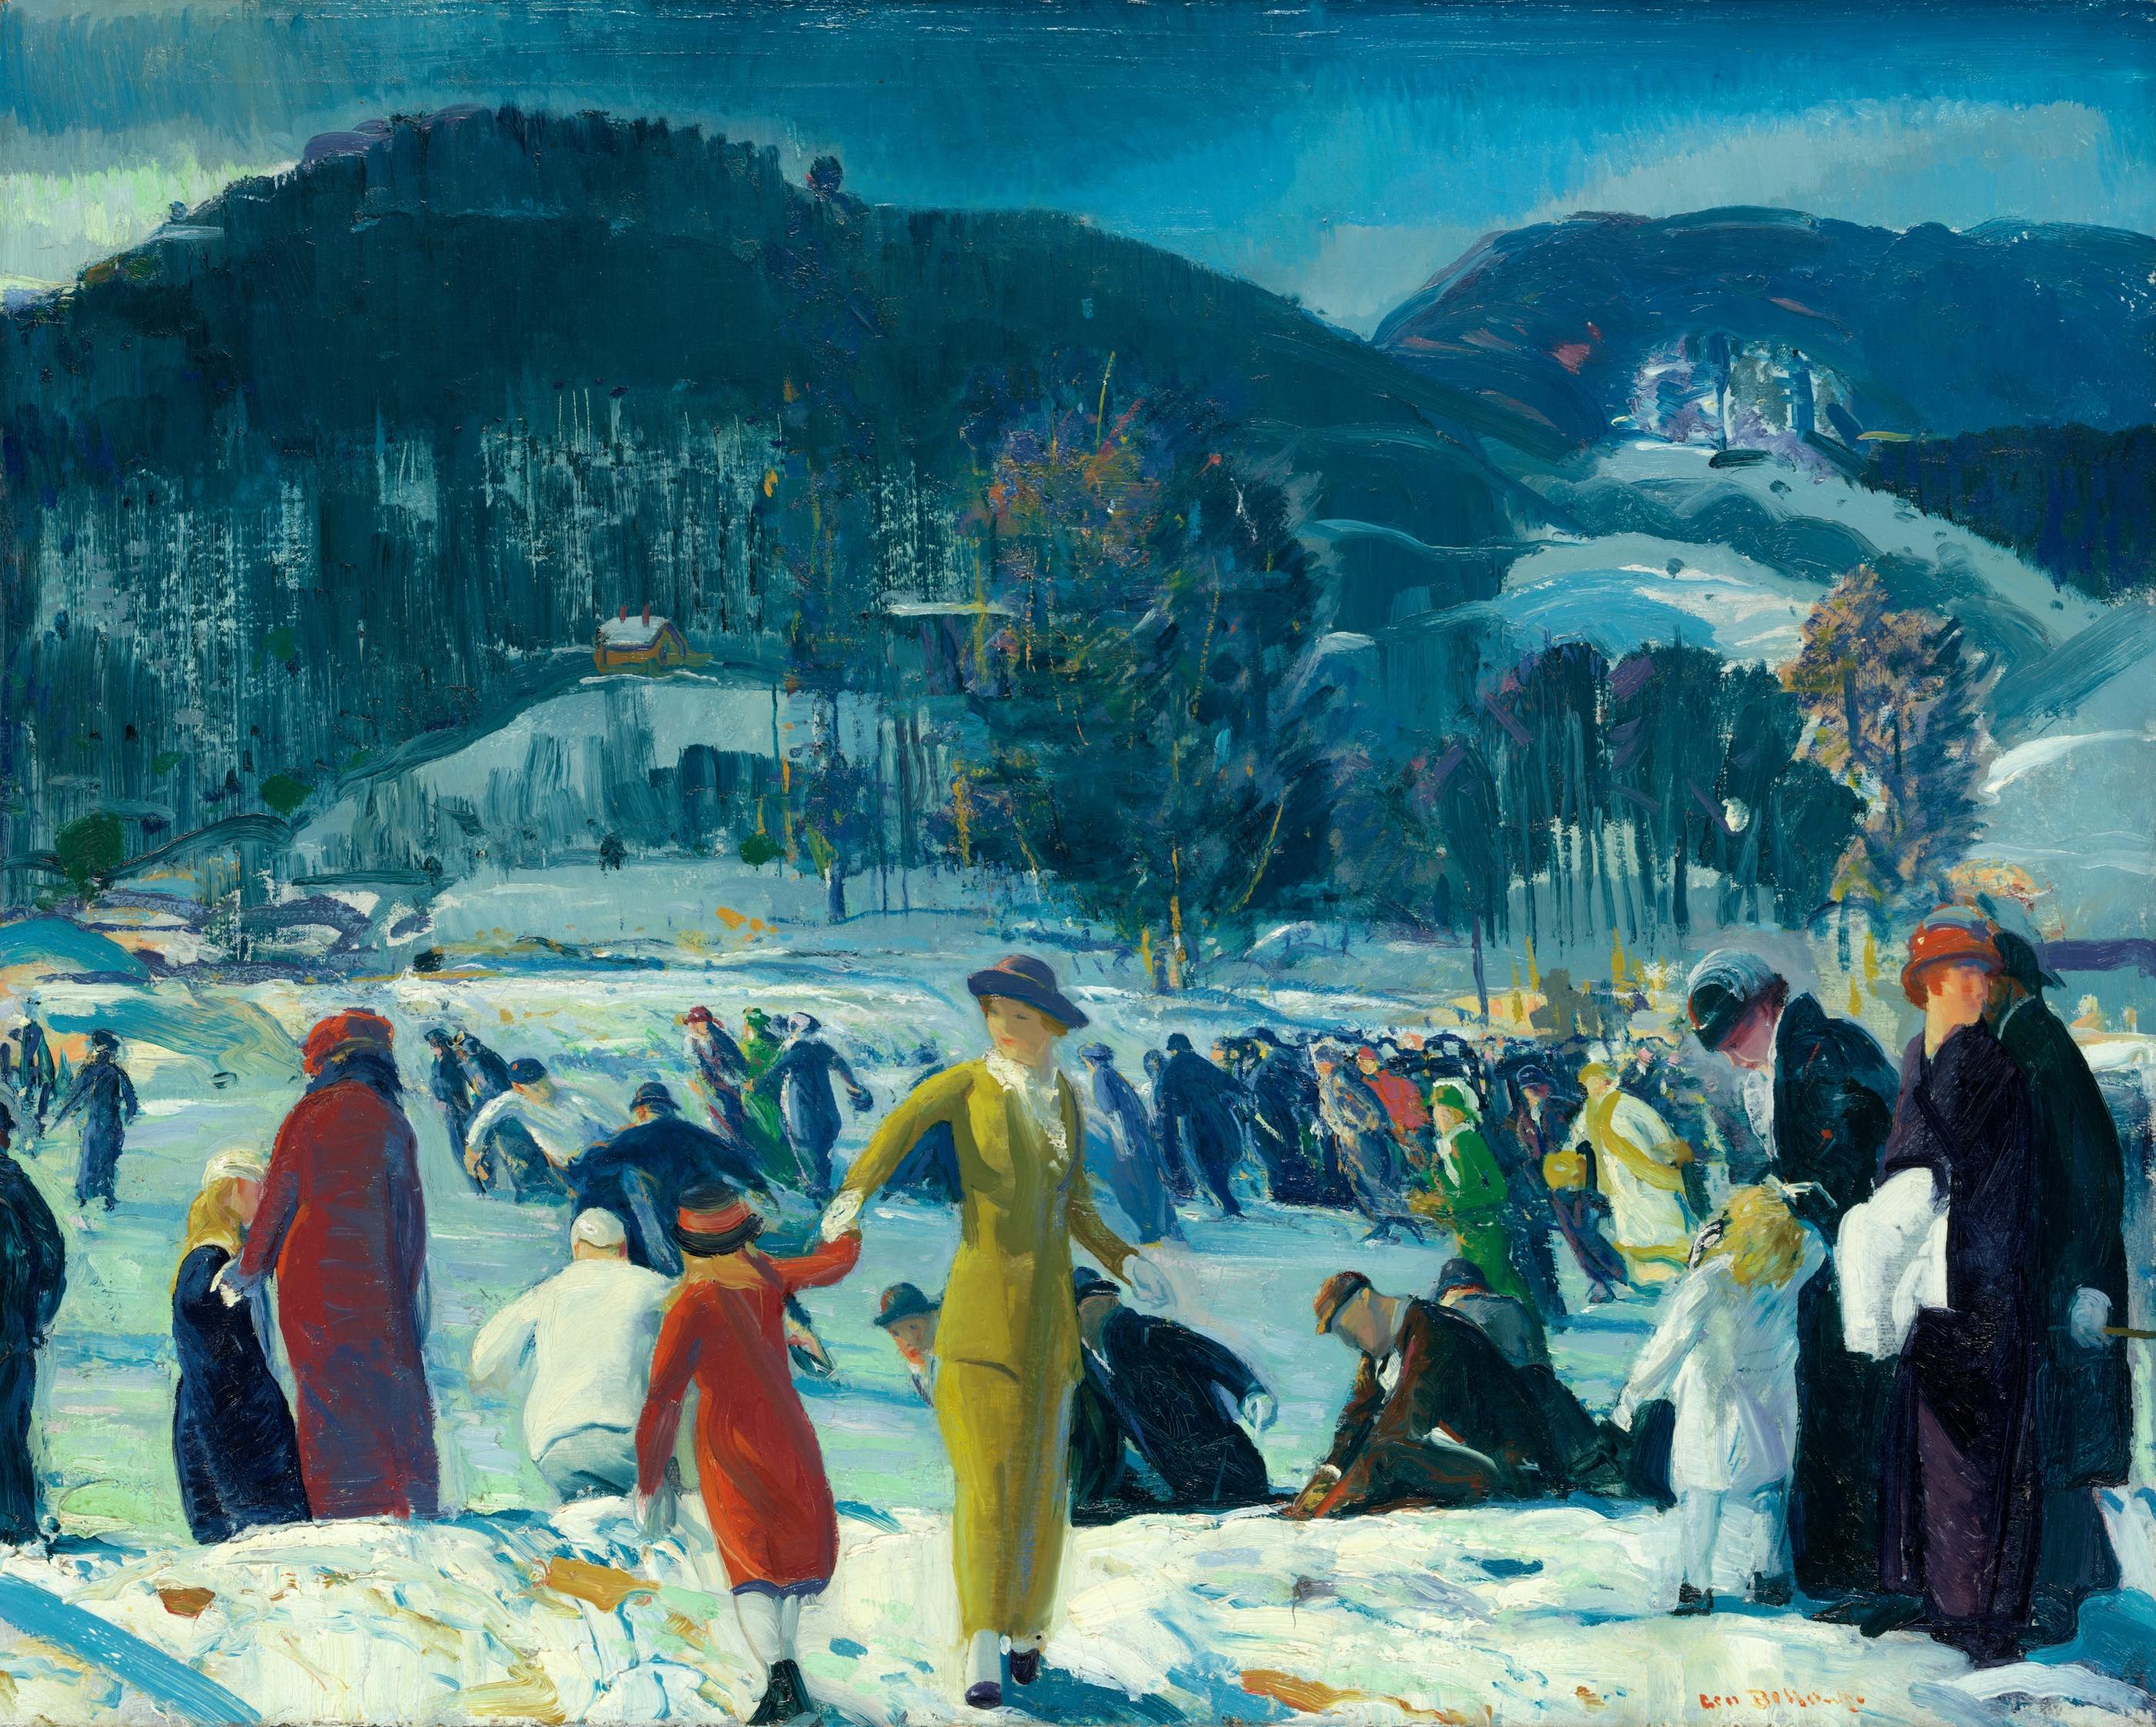 عشق به زمستان by George Bellows - 1914 - 81.6 × 101.6 cm 